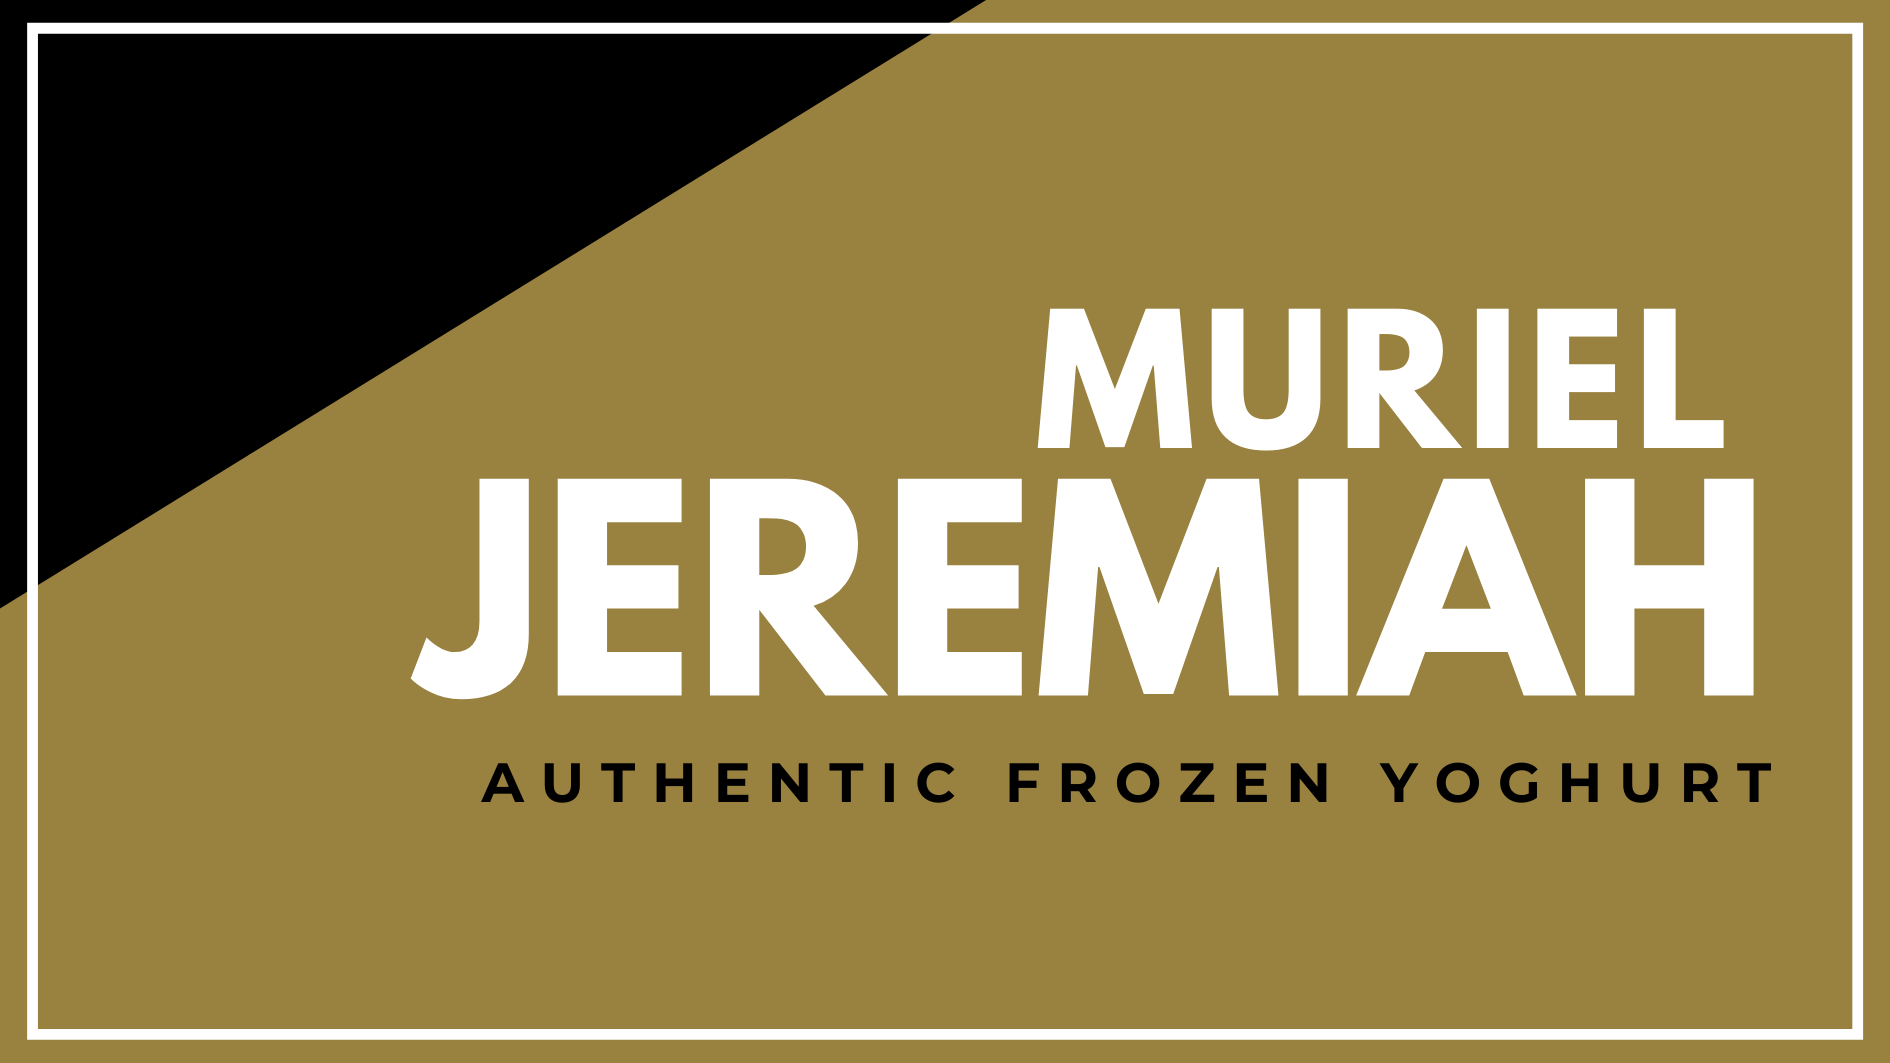 Muriel Jeremiah